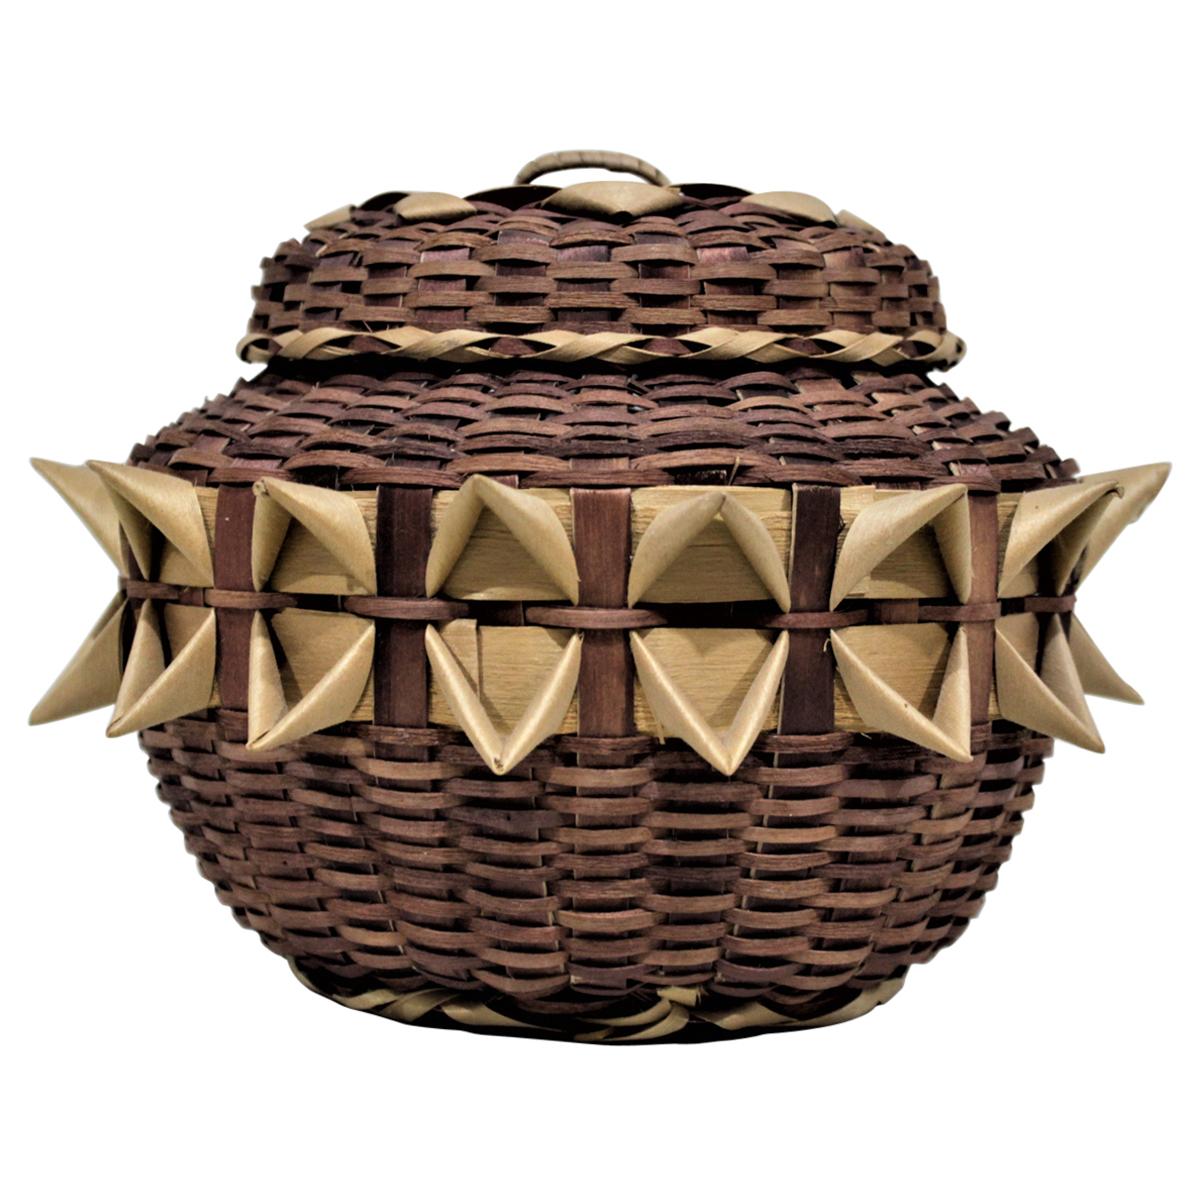 Indigenous Styled Large Handwoven Bird Beak Fancy Lidded Basket